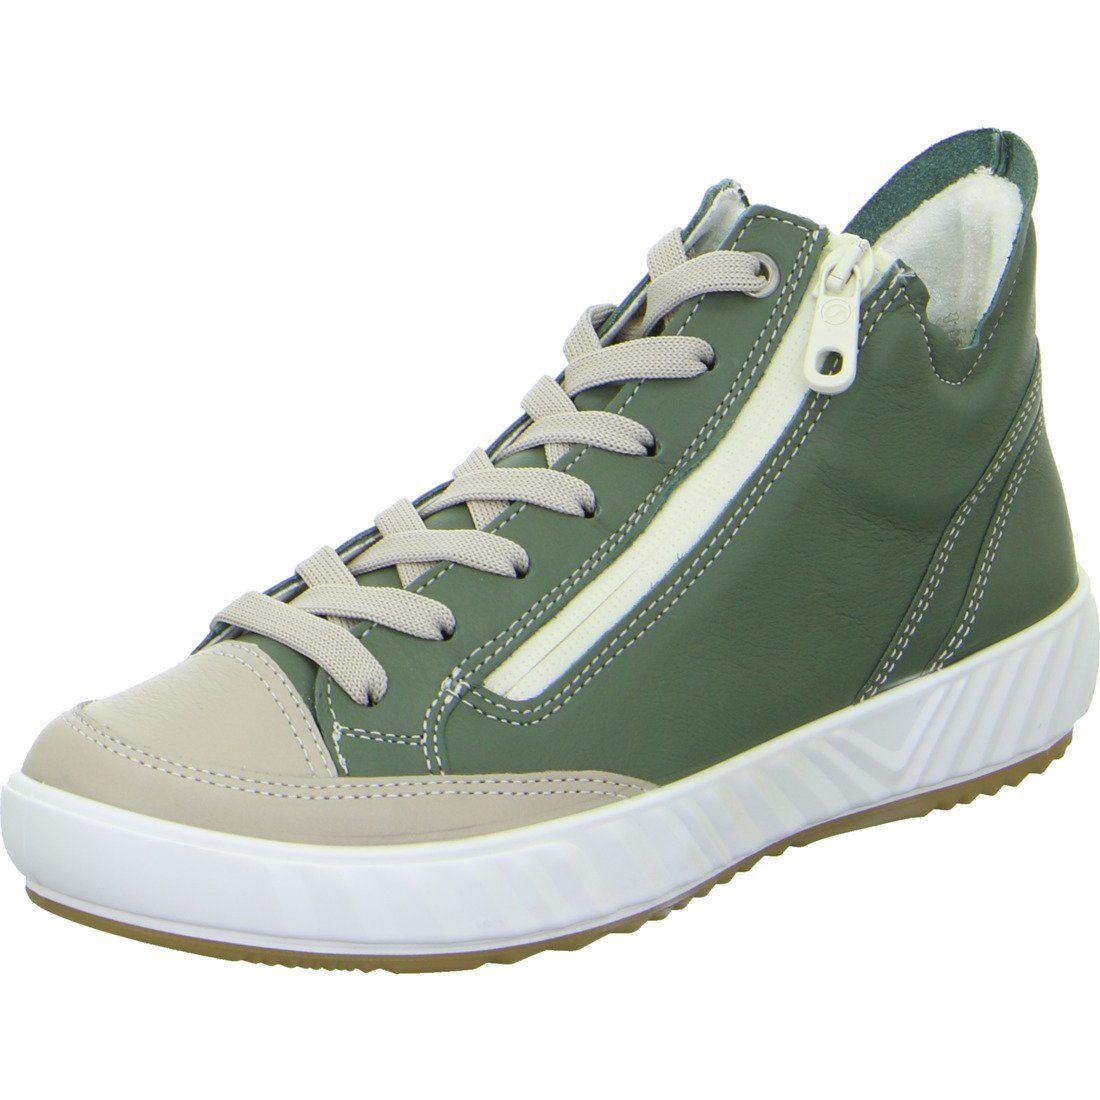 Ara Ara Schuhe, Sneaker Avio - Glattleder Damen Sneaker grün 047892